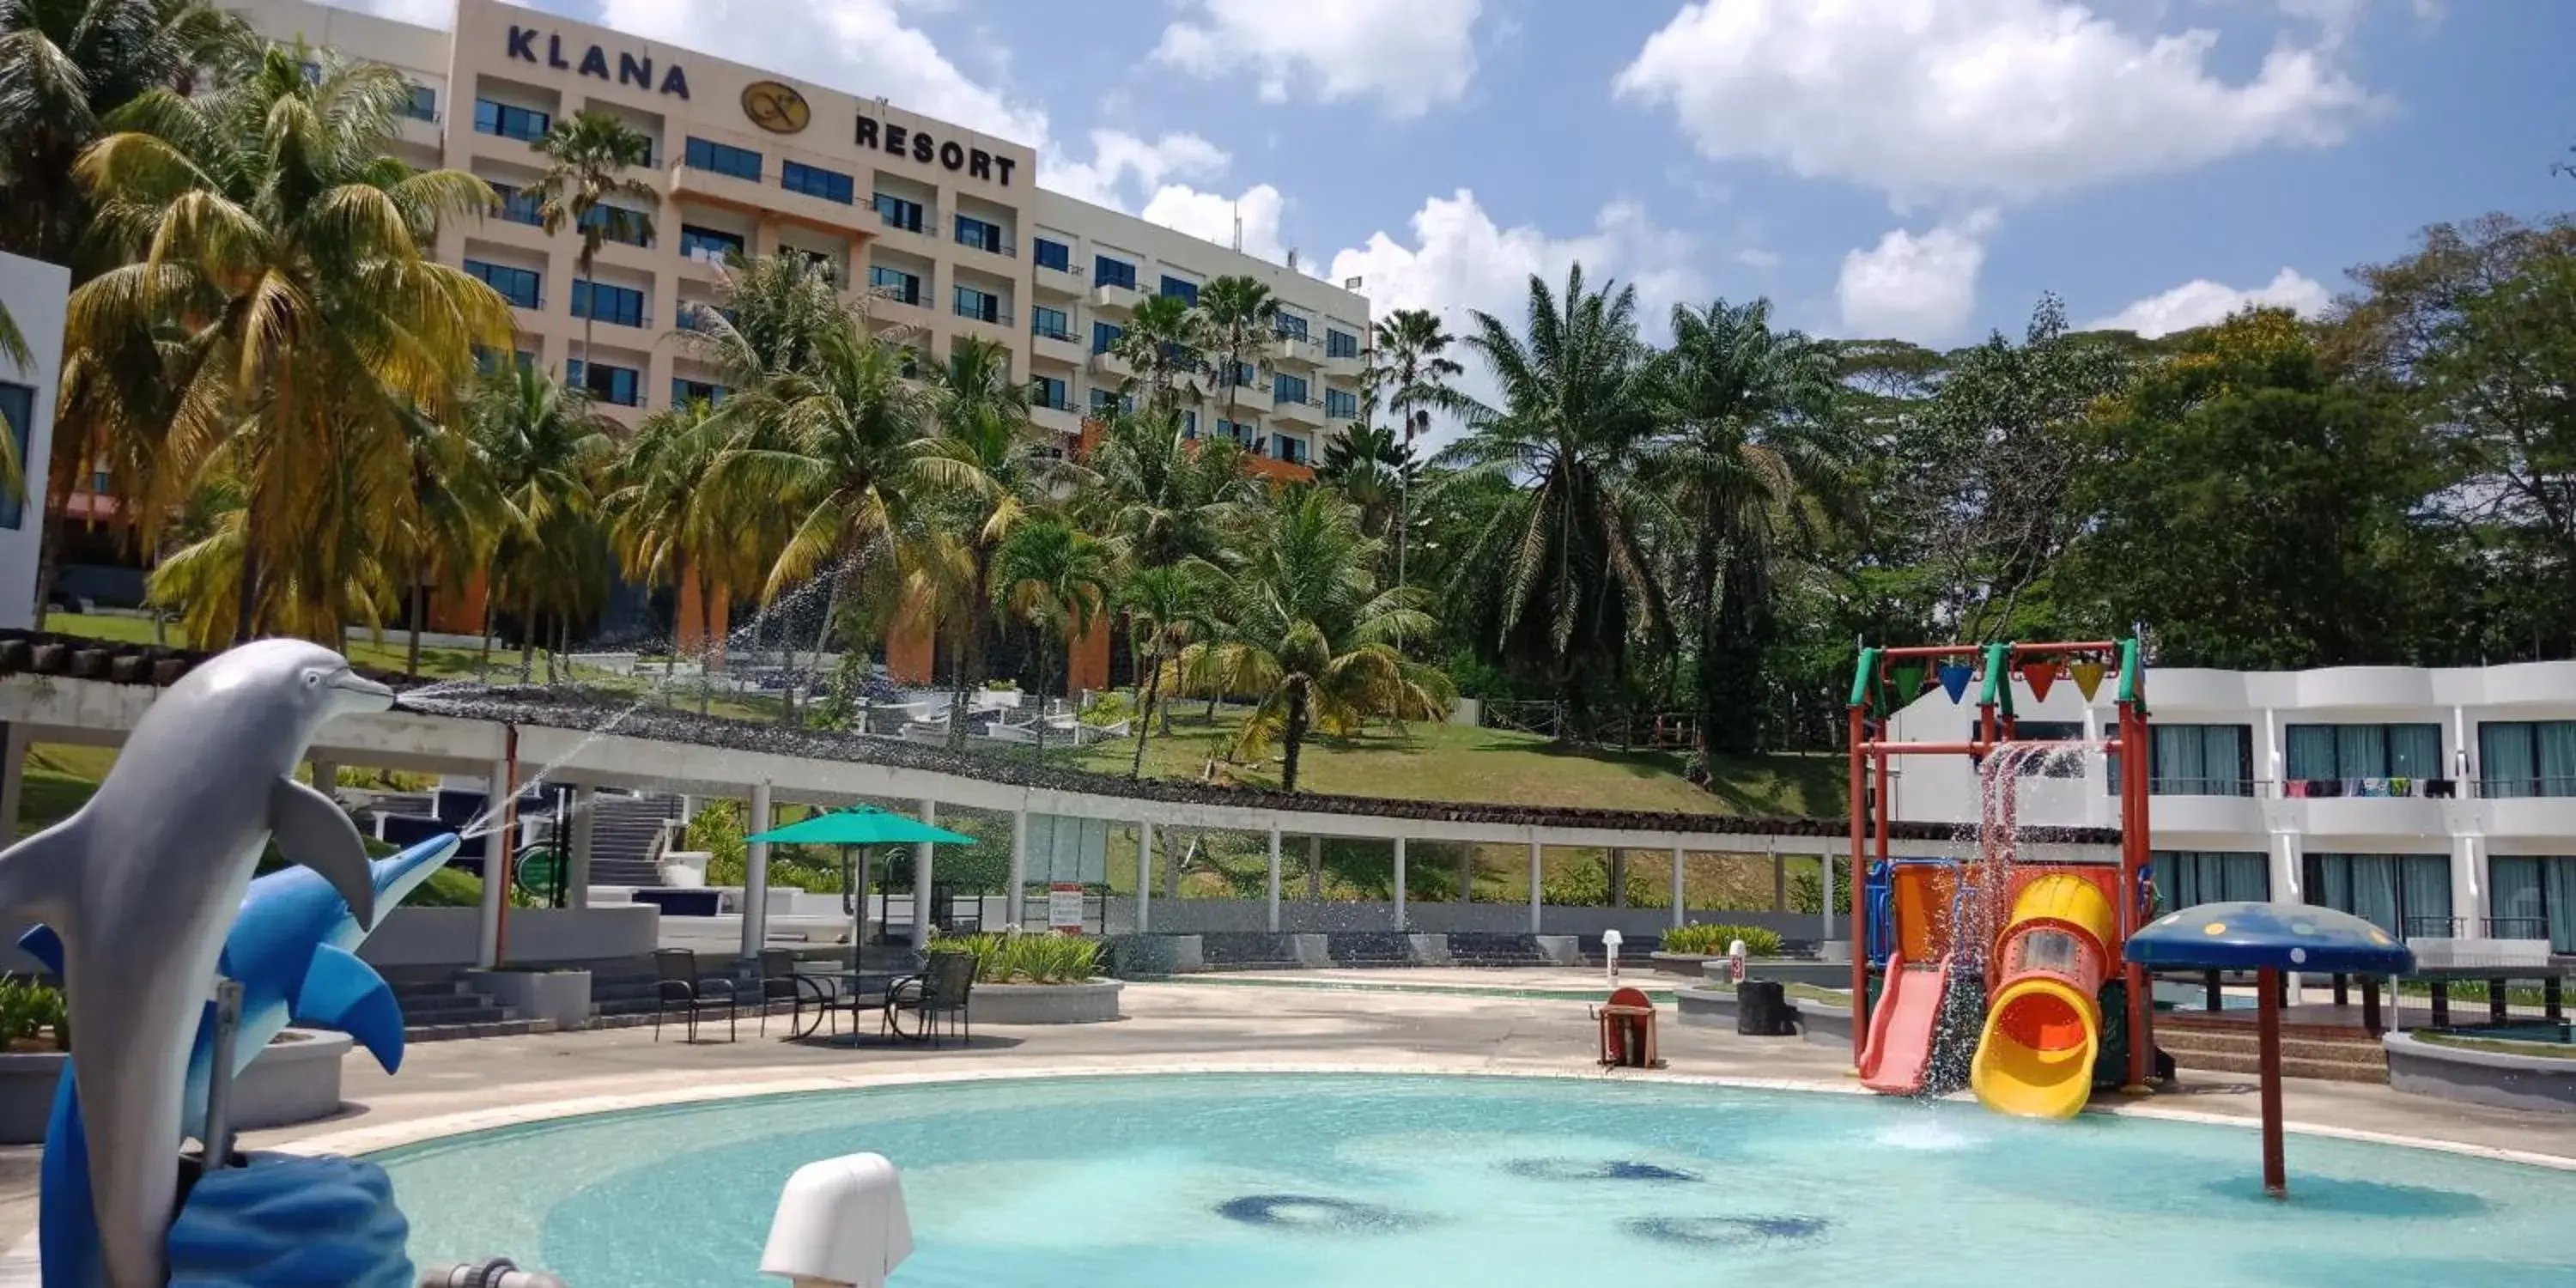 Swimming Pool in Klana Resort Seremban